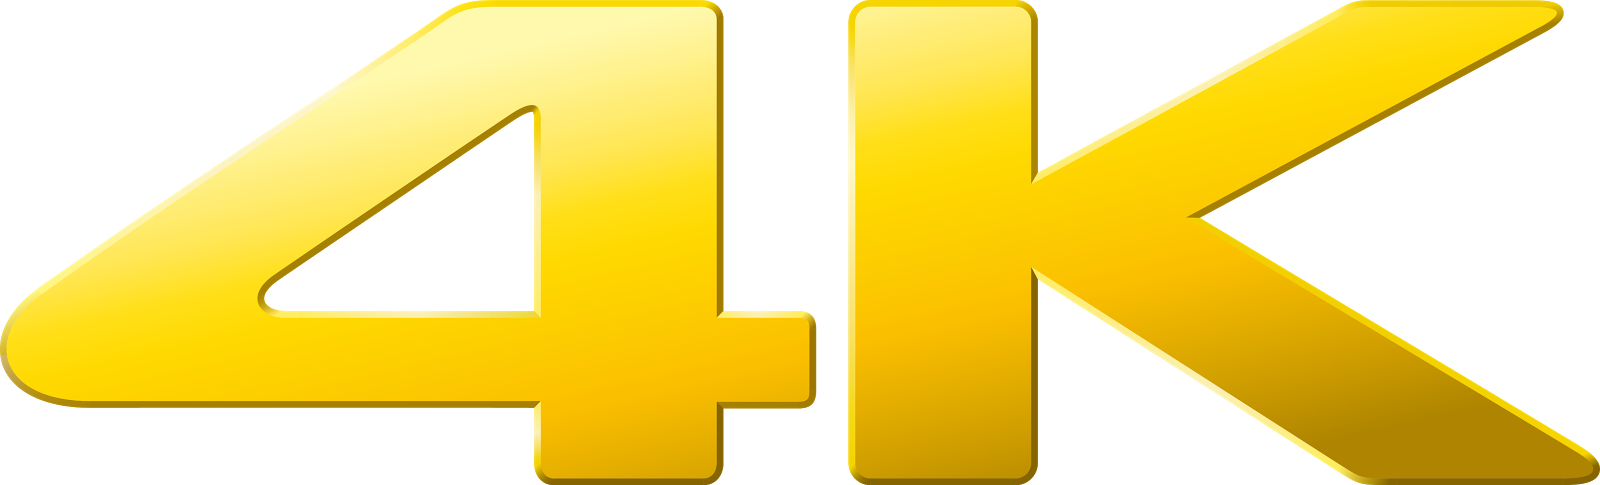 4k Hd Logo Png - Free Logo Image